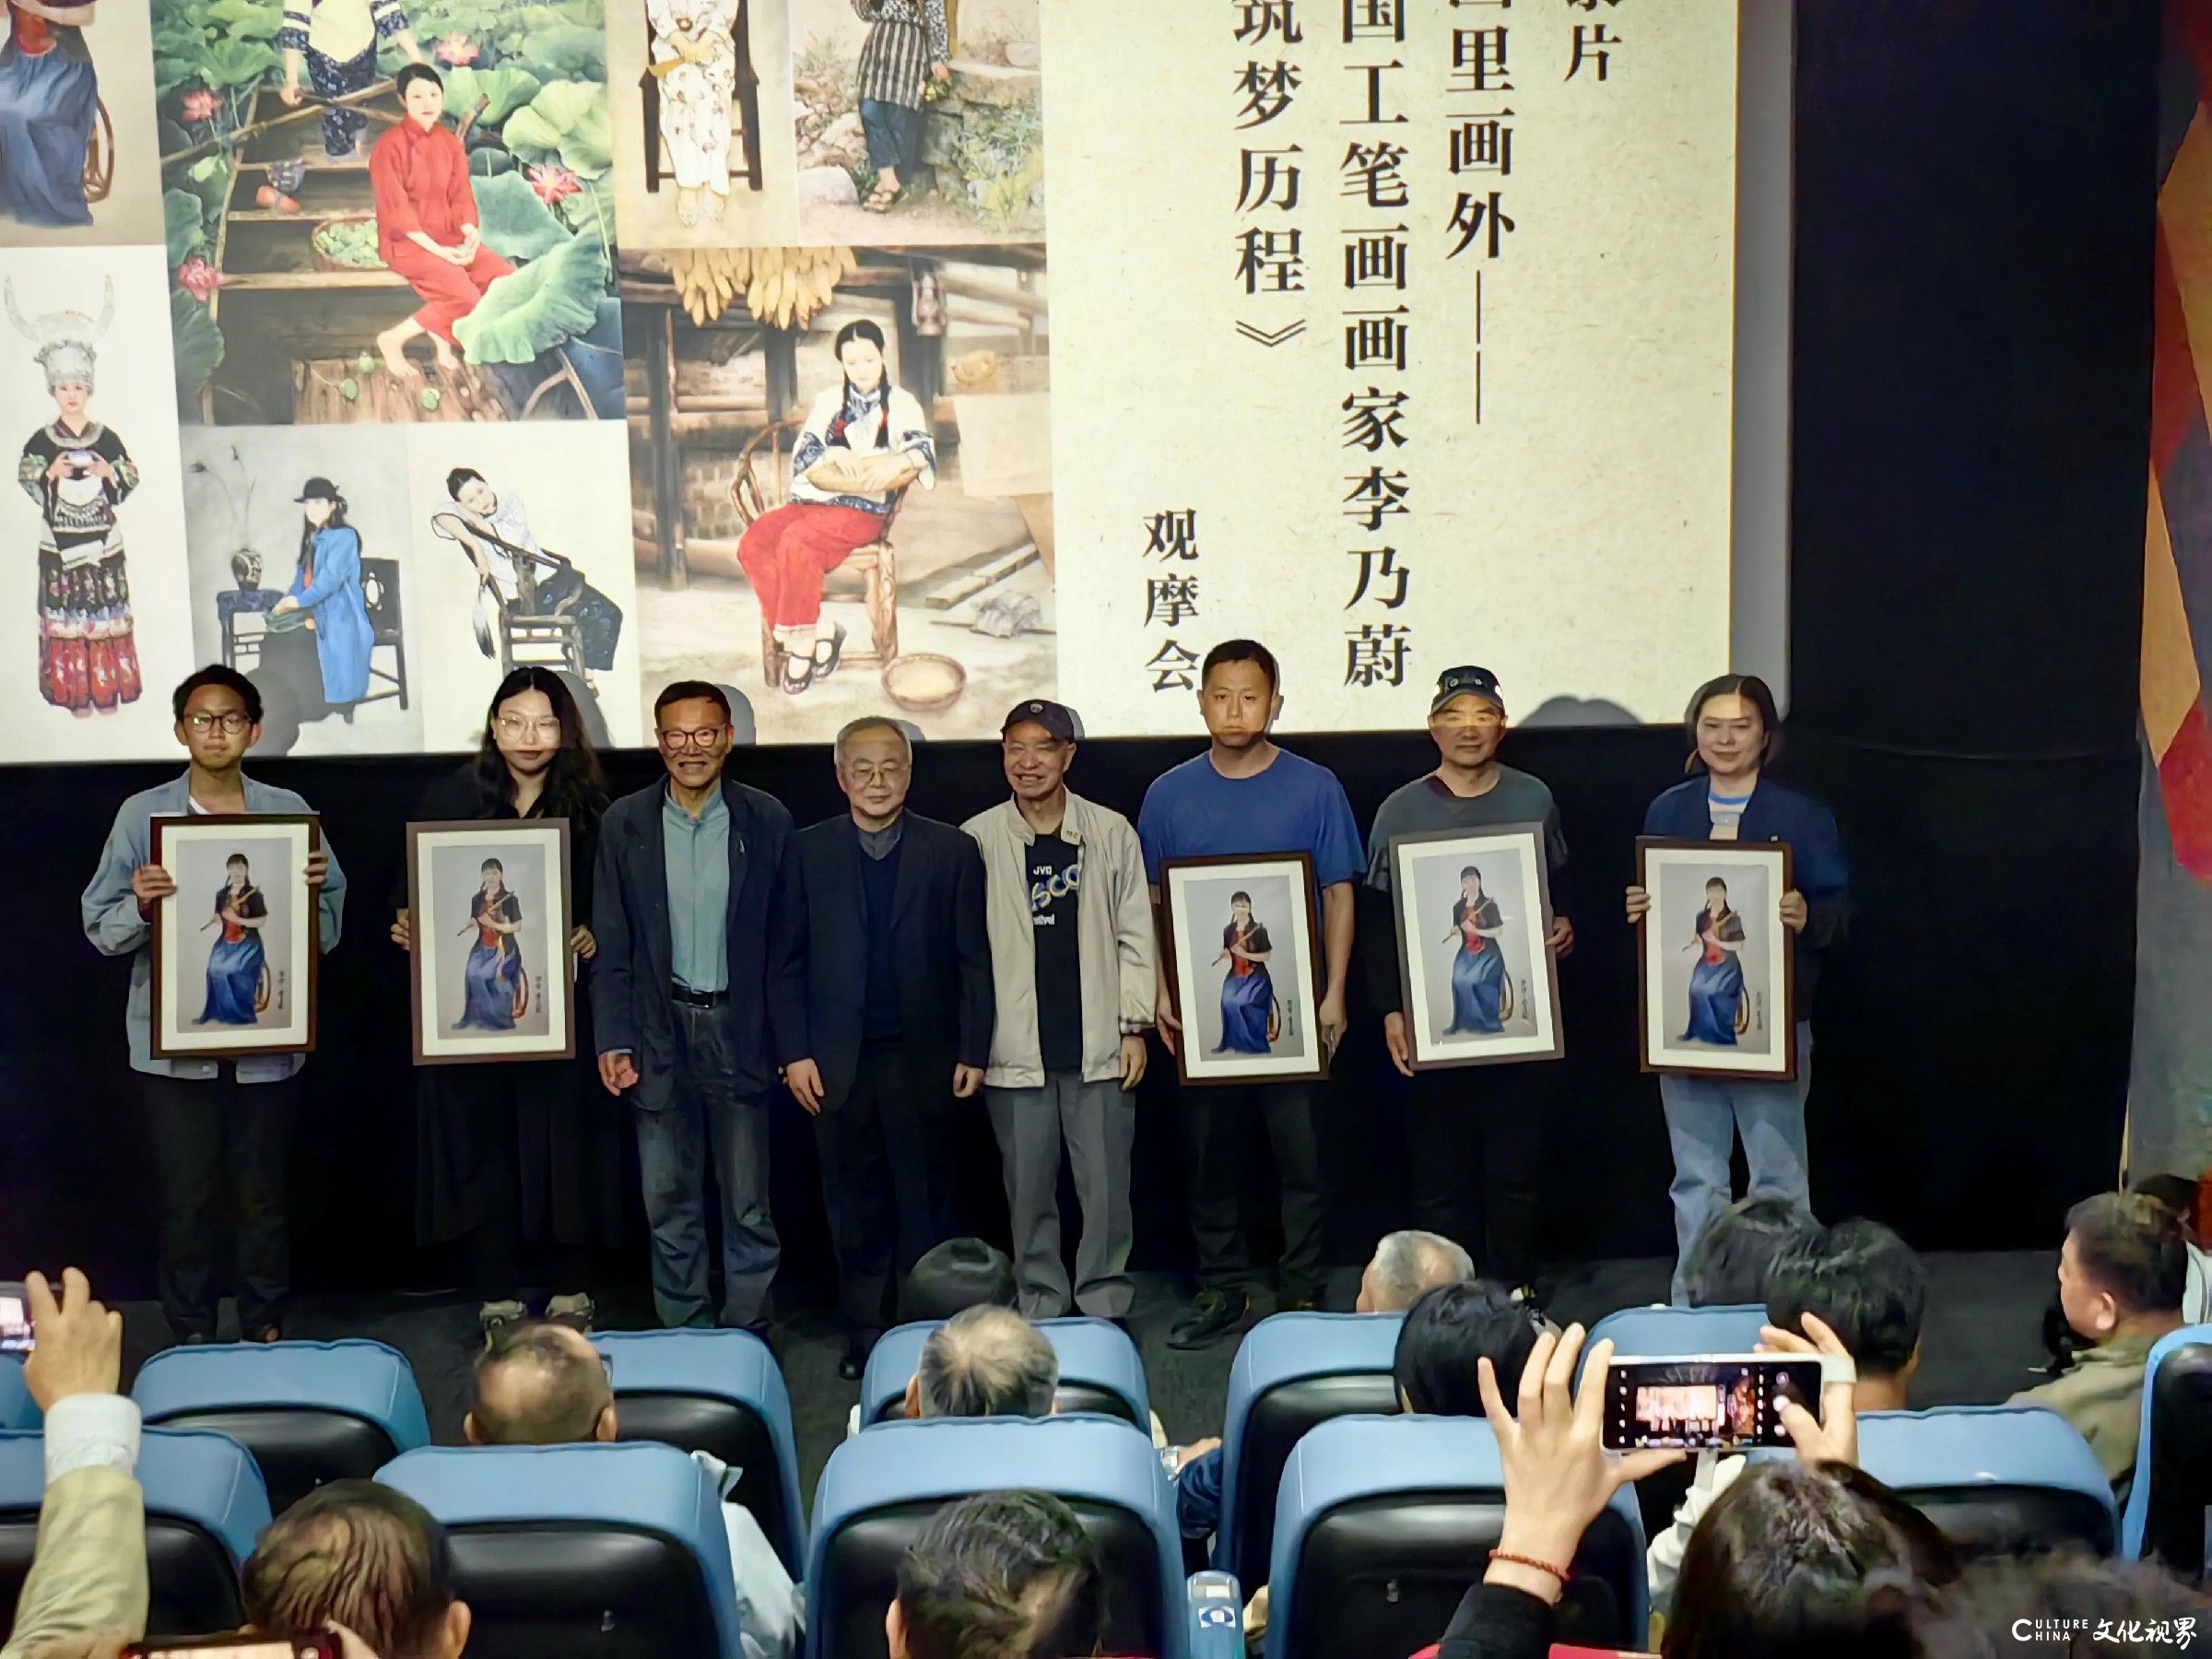 纪录片《画里画外——中国工笔画画家李乃蔚的筑梦历程》观摩会在武汉举办